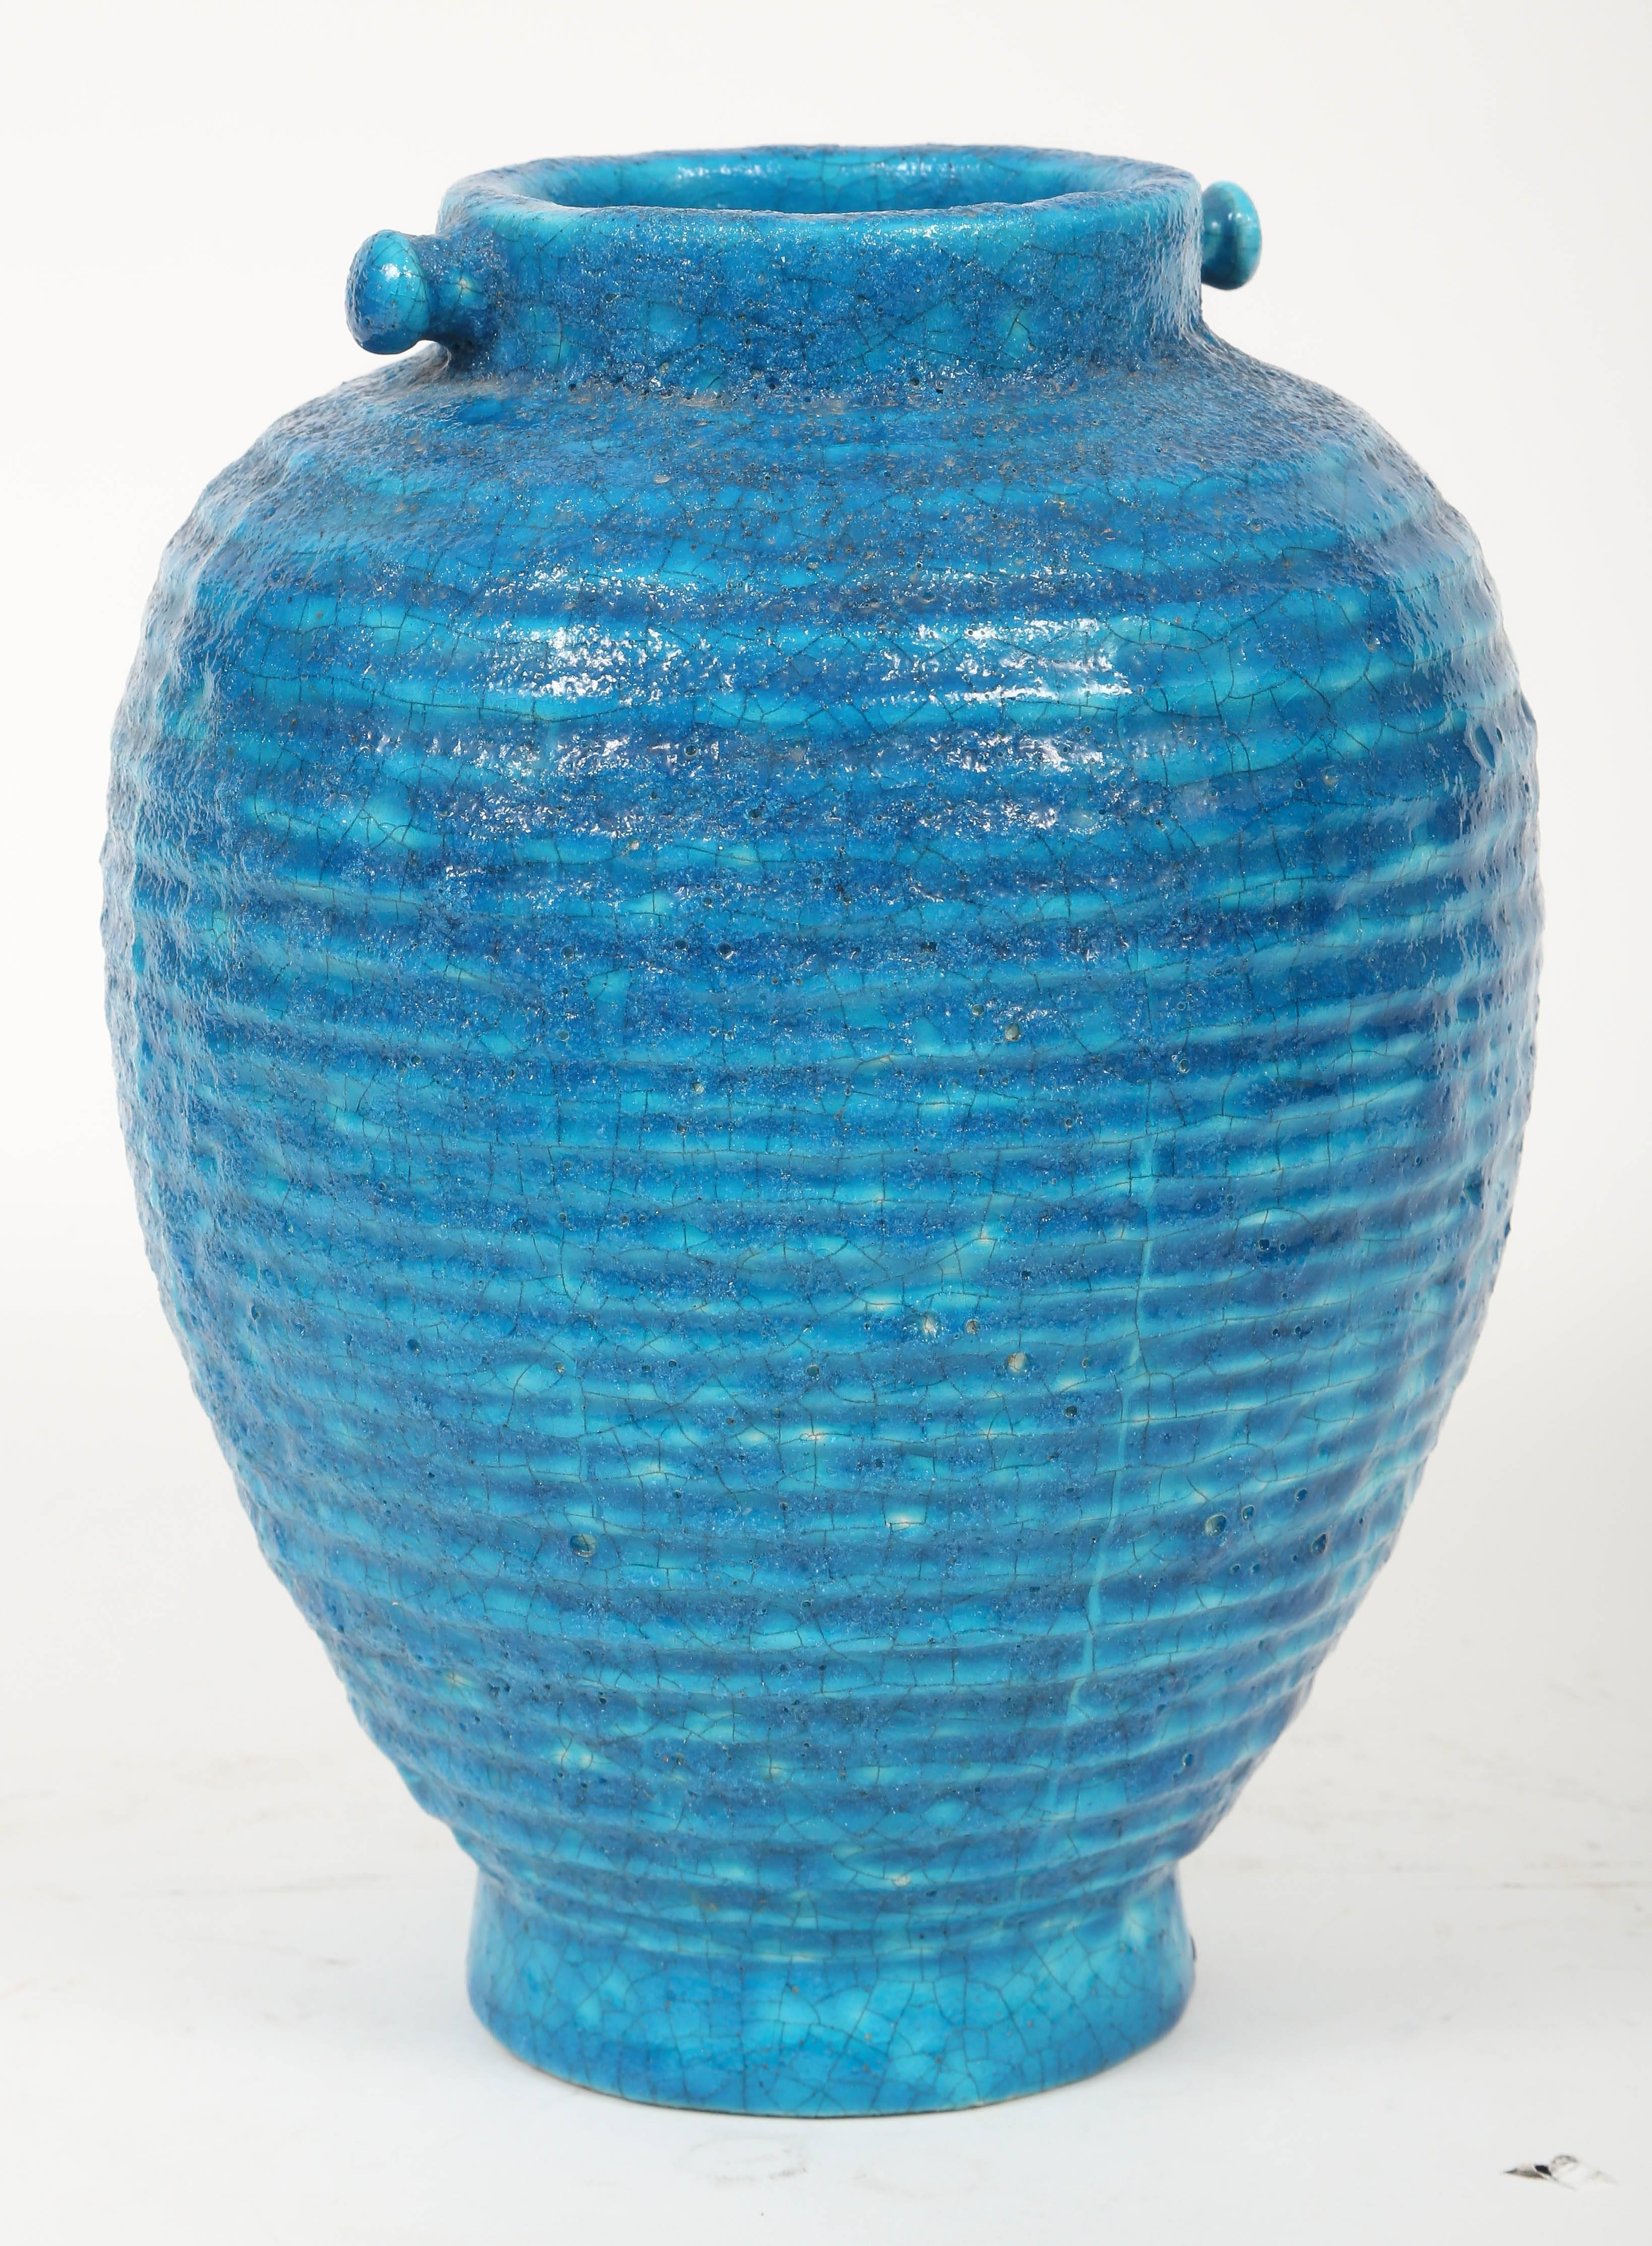 Insolite vase Lachenal nervuré avec des poteaux décoratifs sur le bord. Signé LACHENAL en bas, partiellement masqué par le glaçage final.